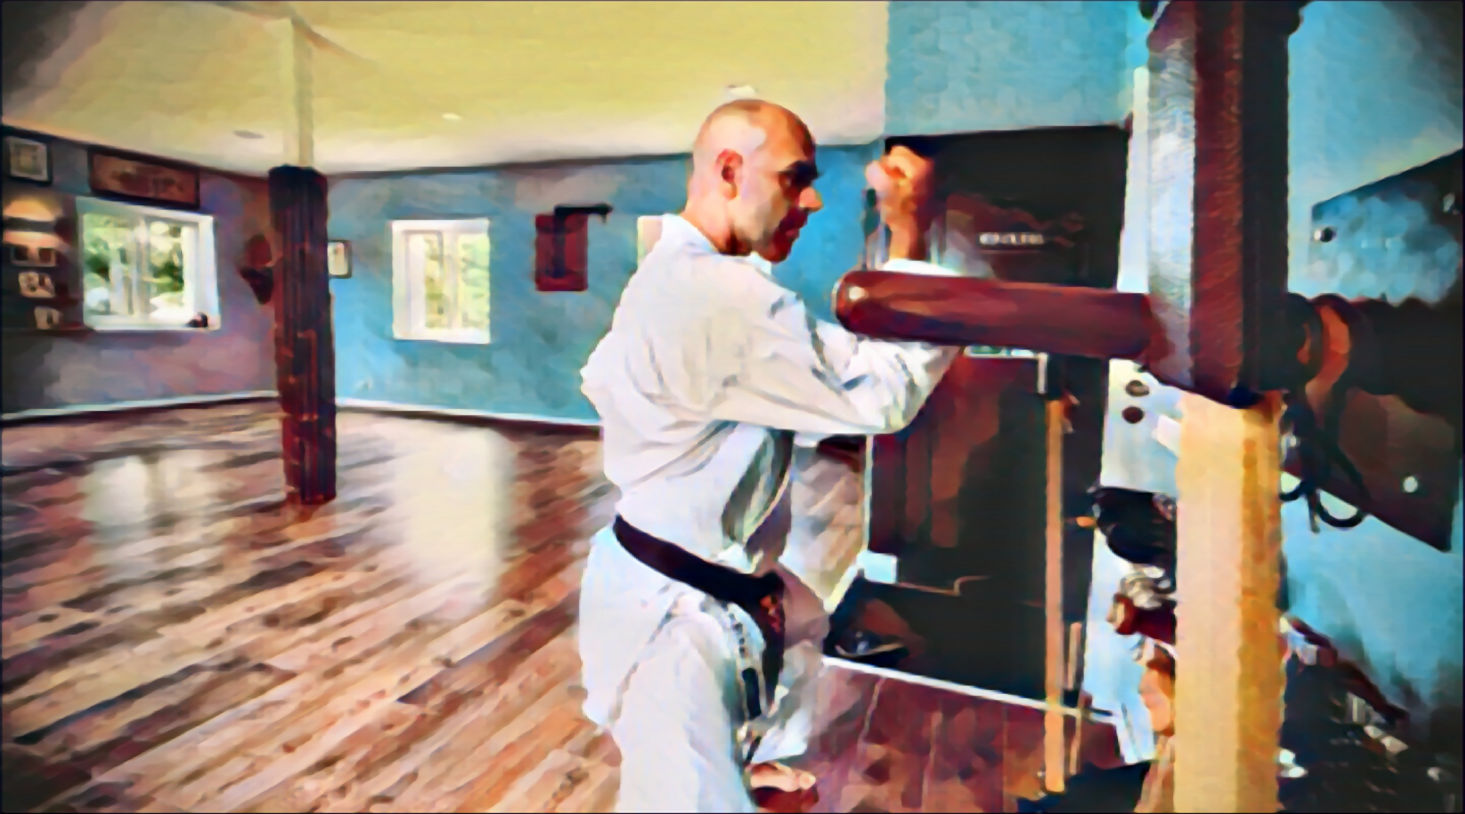 Shirasagi Shima Dojo - David Deinert - Original Okinawa Karate in Chemnitz